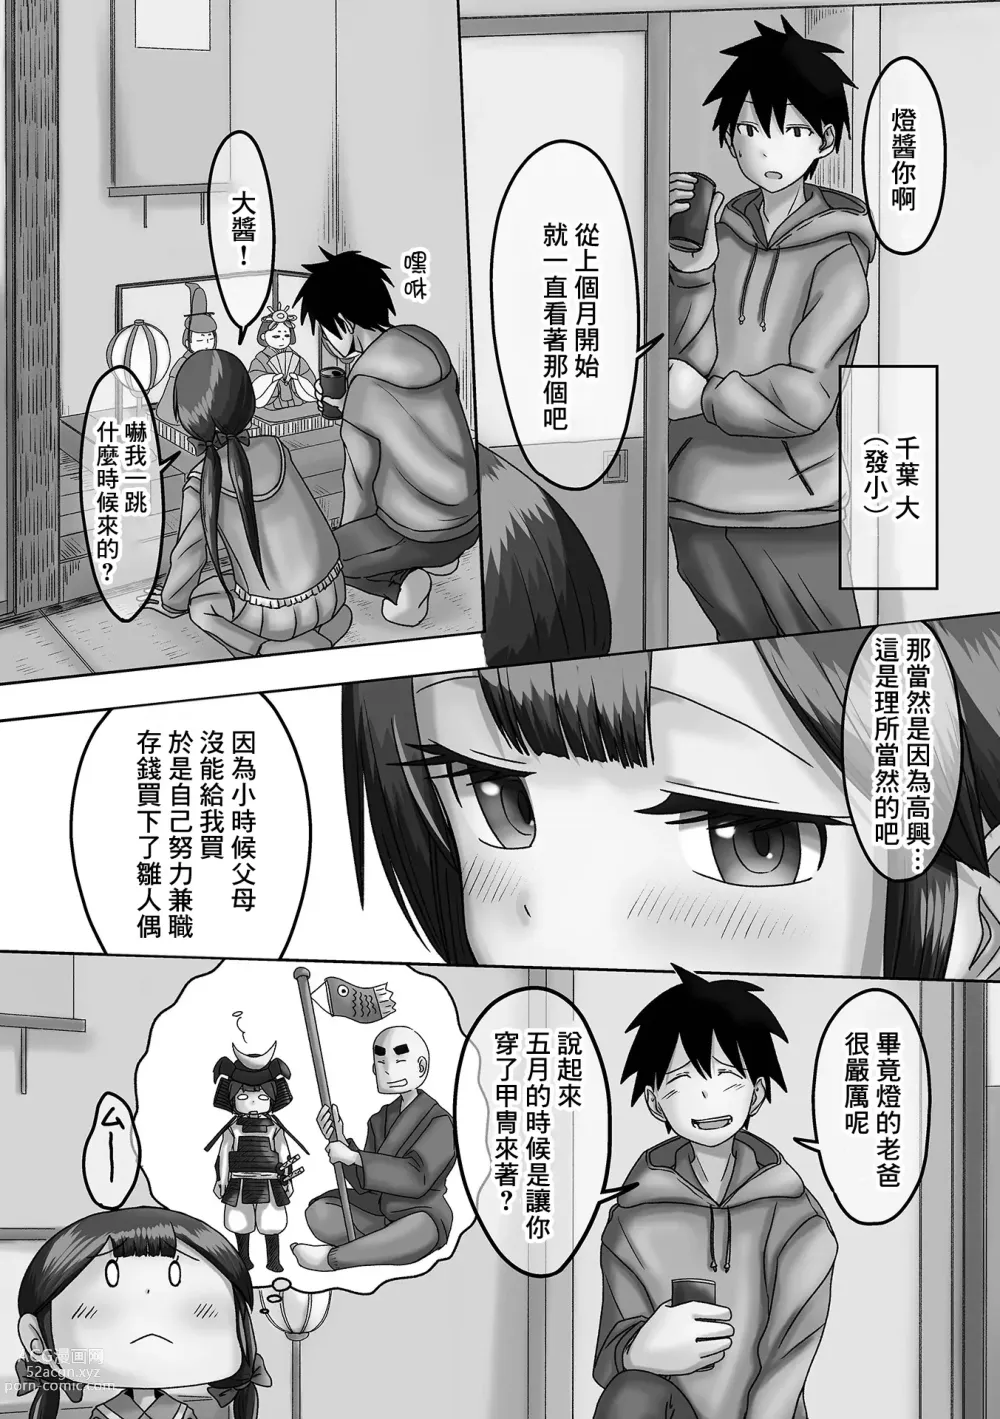 Page 2 of manga Akari o Tsukemasho Bonbori ni